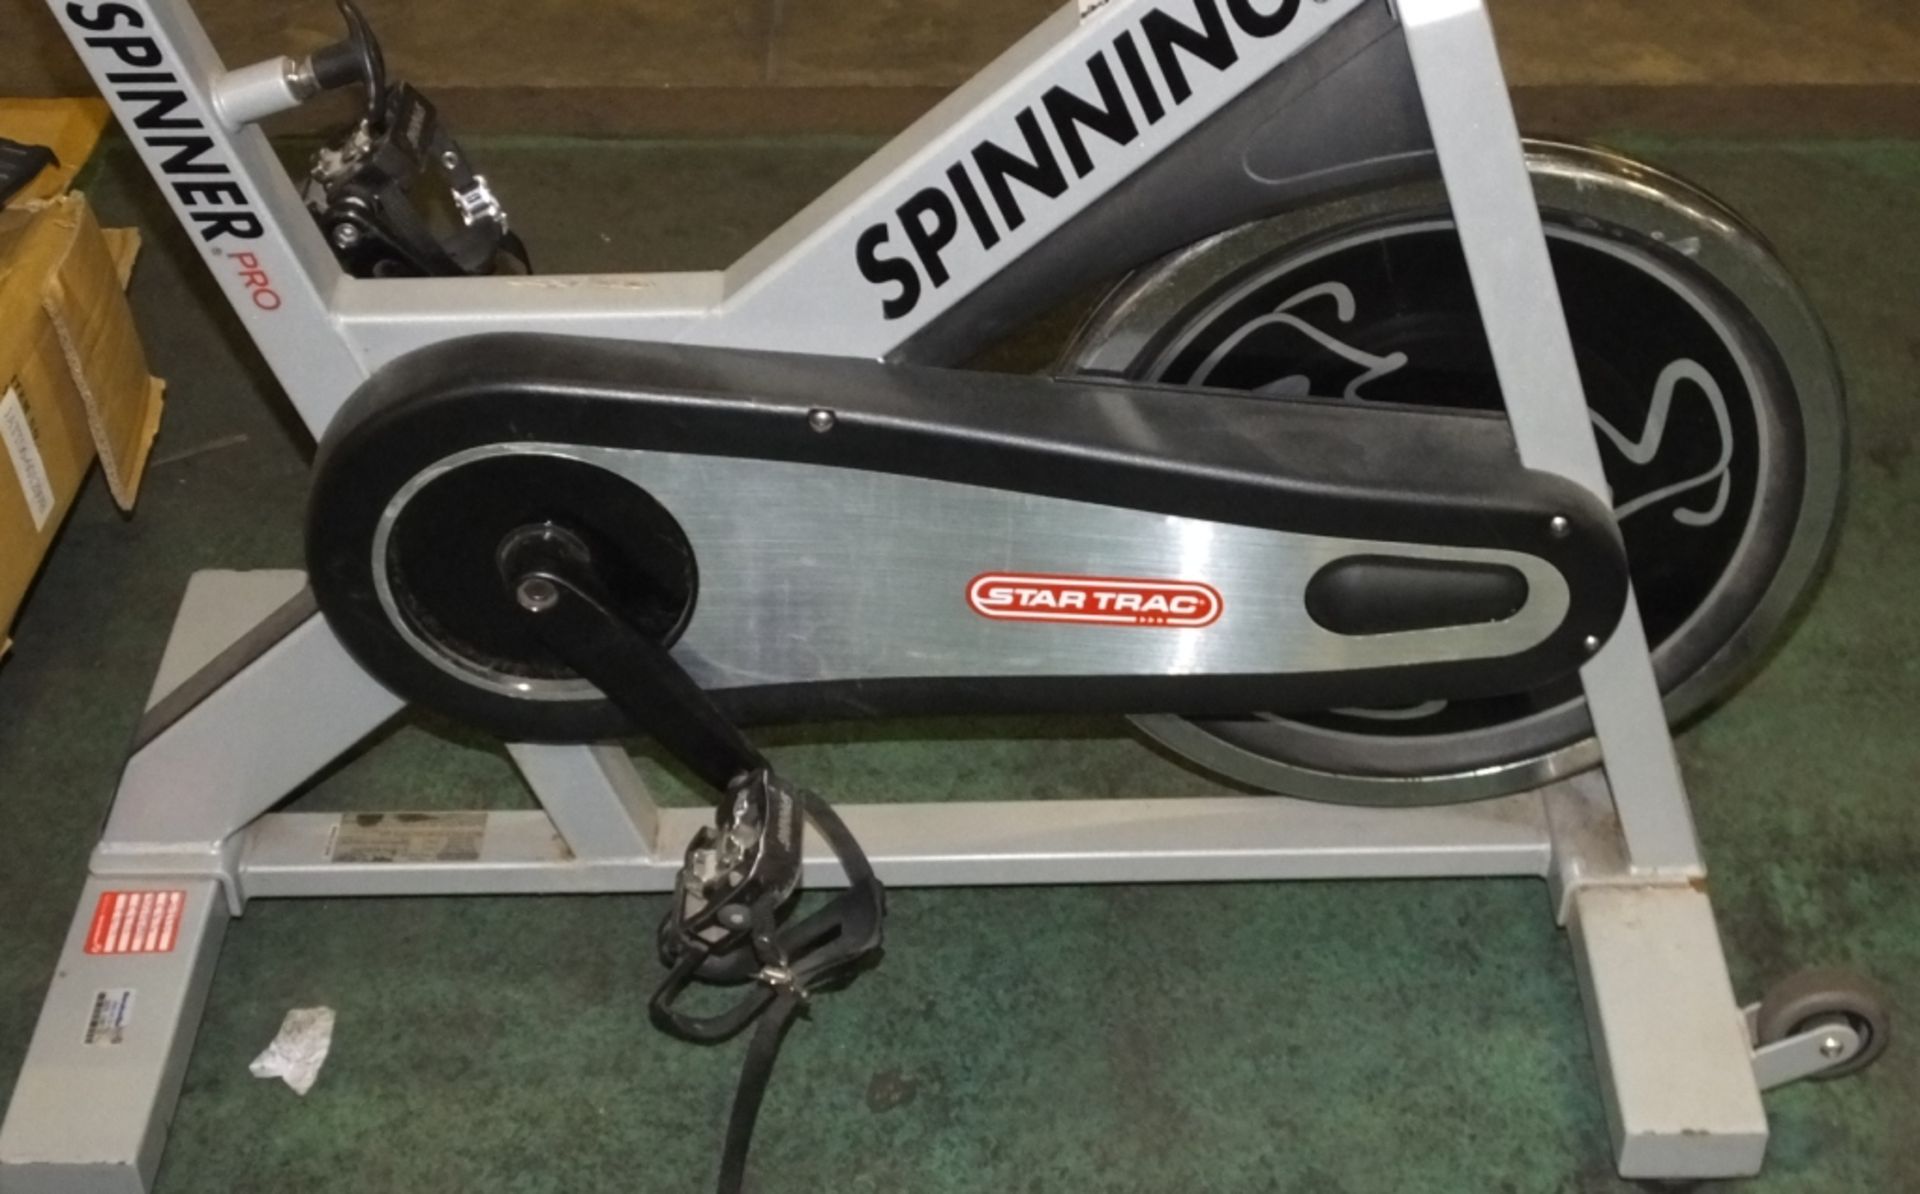 Start Trac Spinner Pro Exercise bike - Image 2 of 4